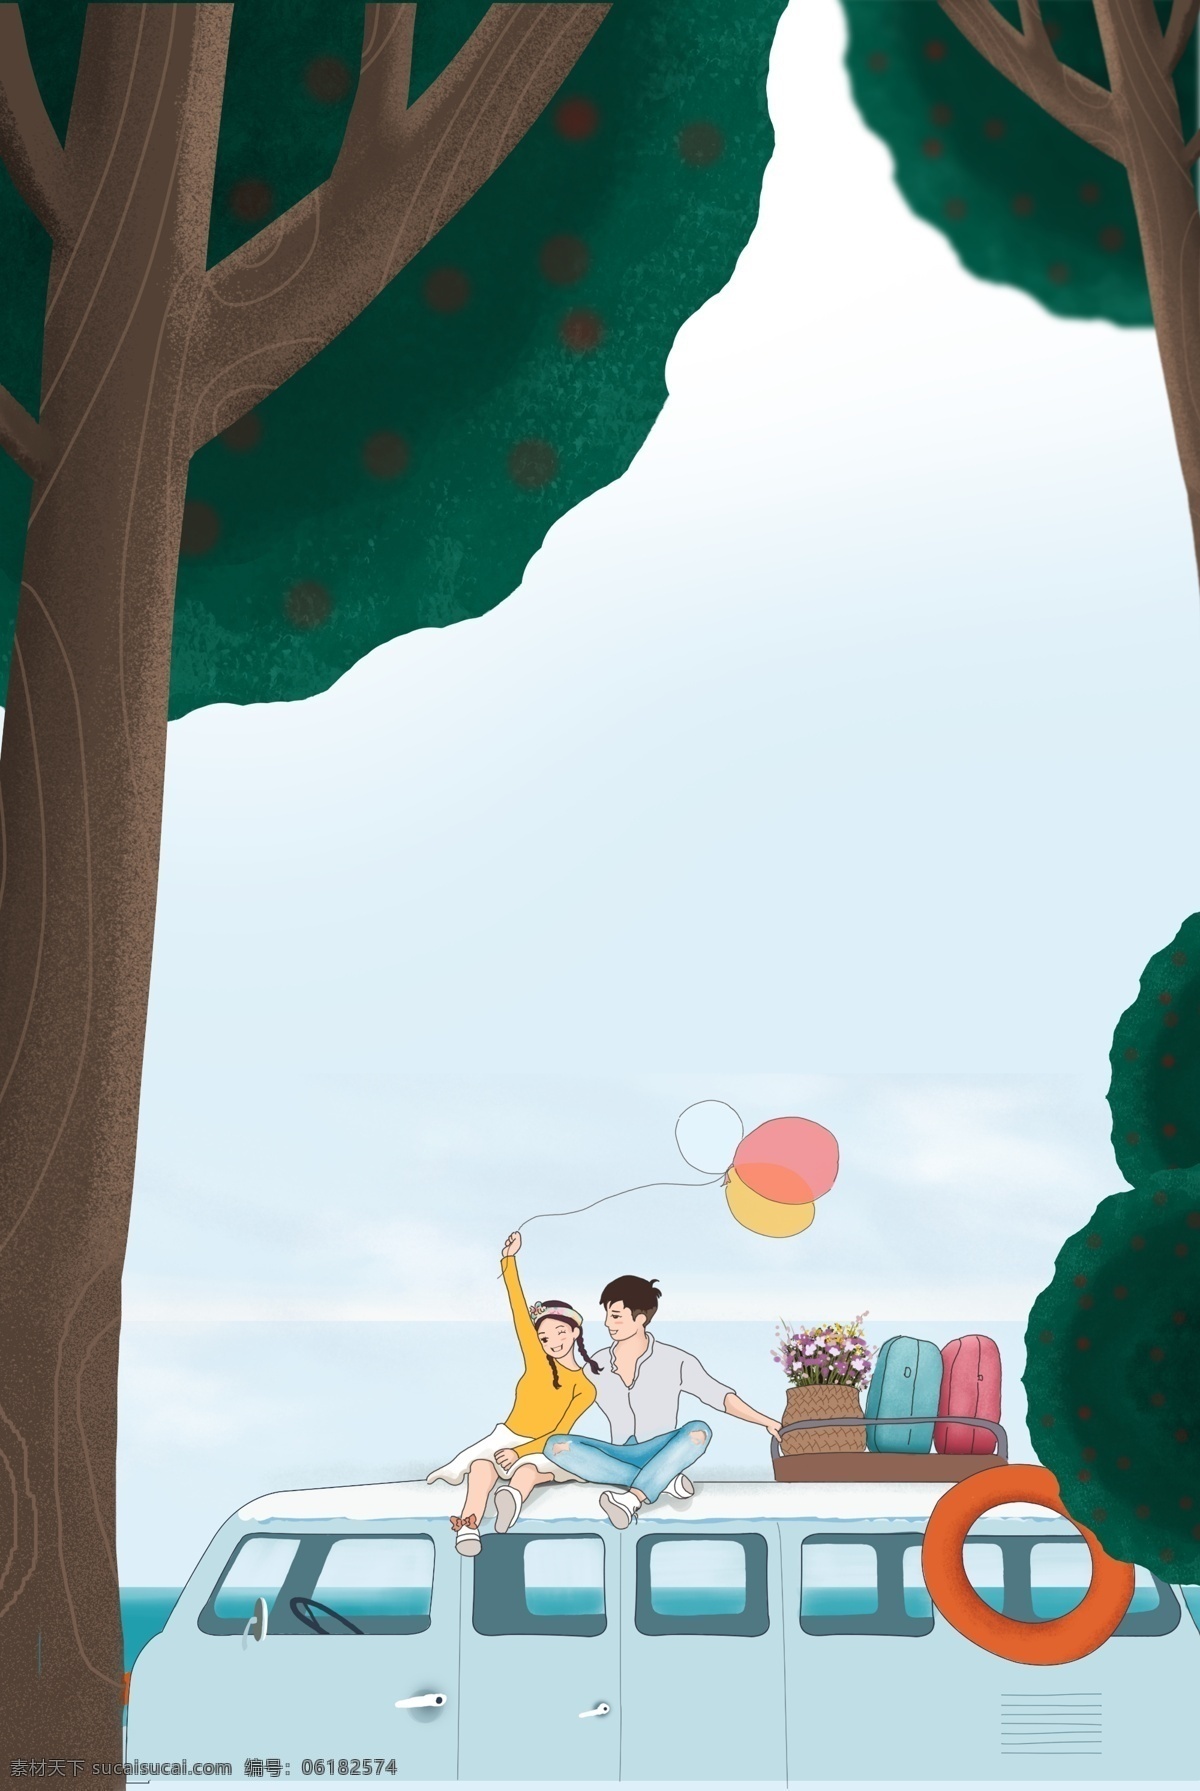 夏季 旅行 游玩 蓝色 森林 背景 森林背景 公交 旅游 树木 气球